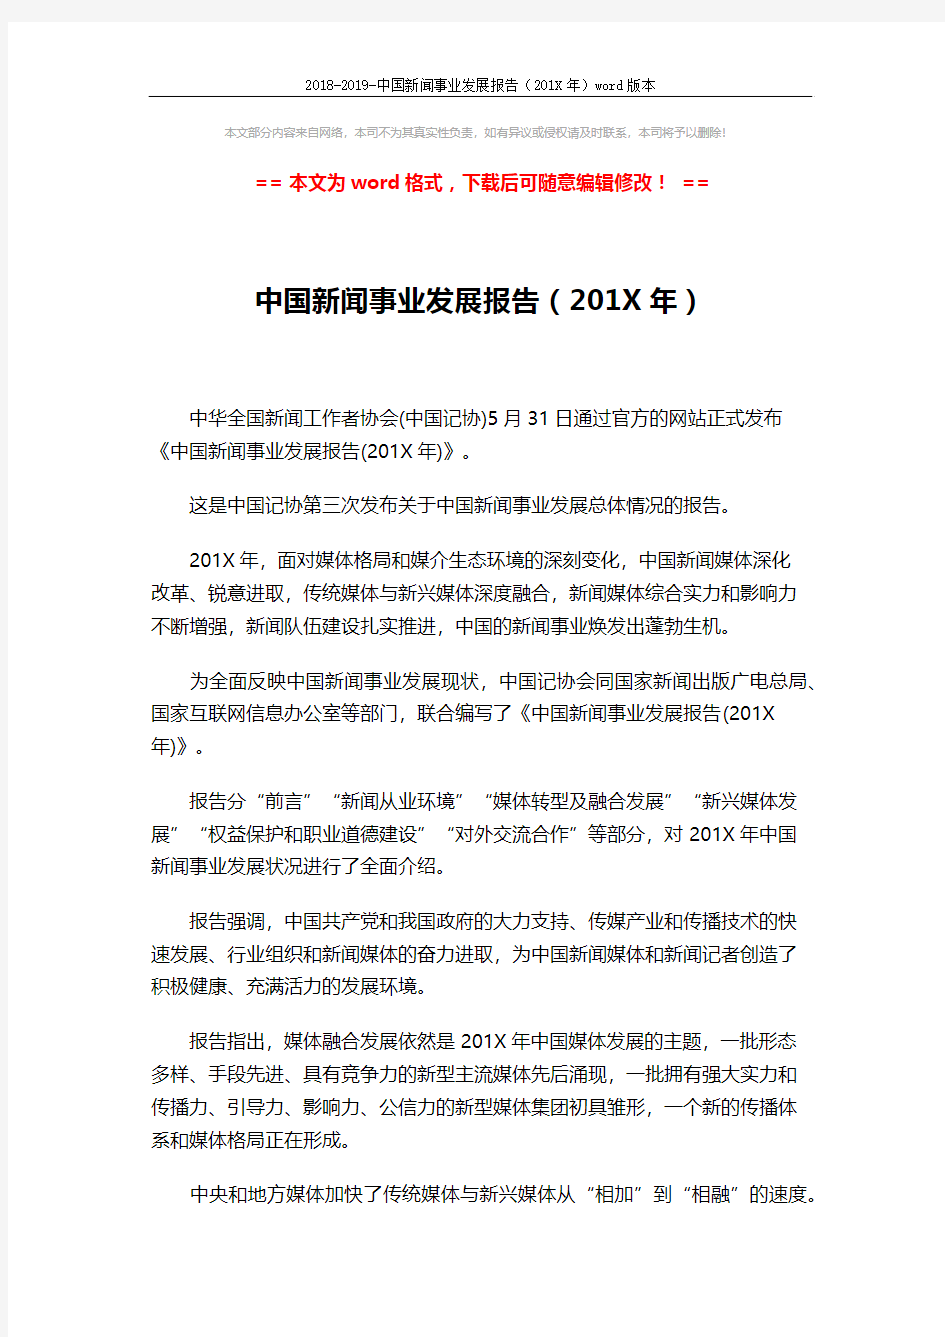 2018-2019-中国新闻事业发展报告(201X年)word版本 (2页)